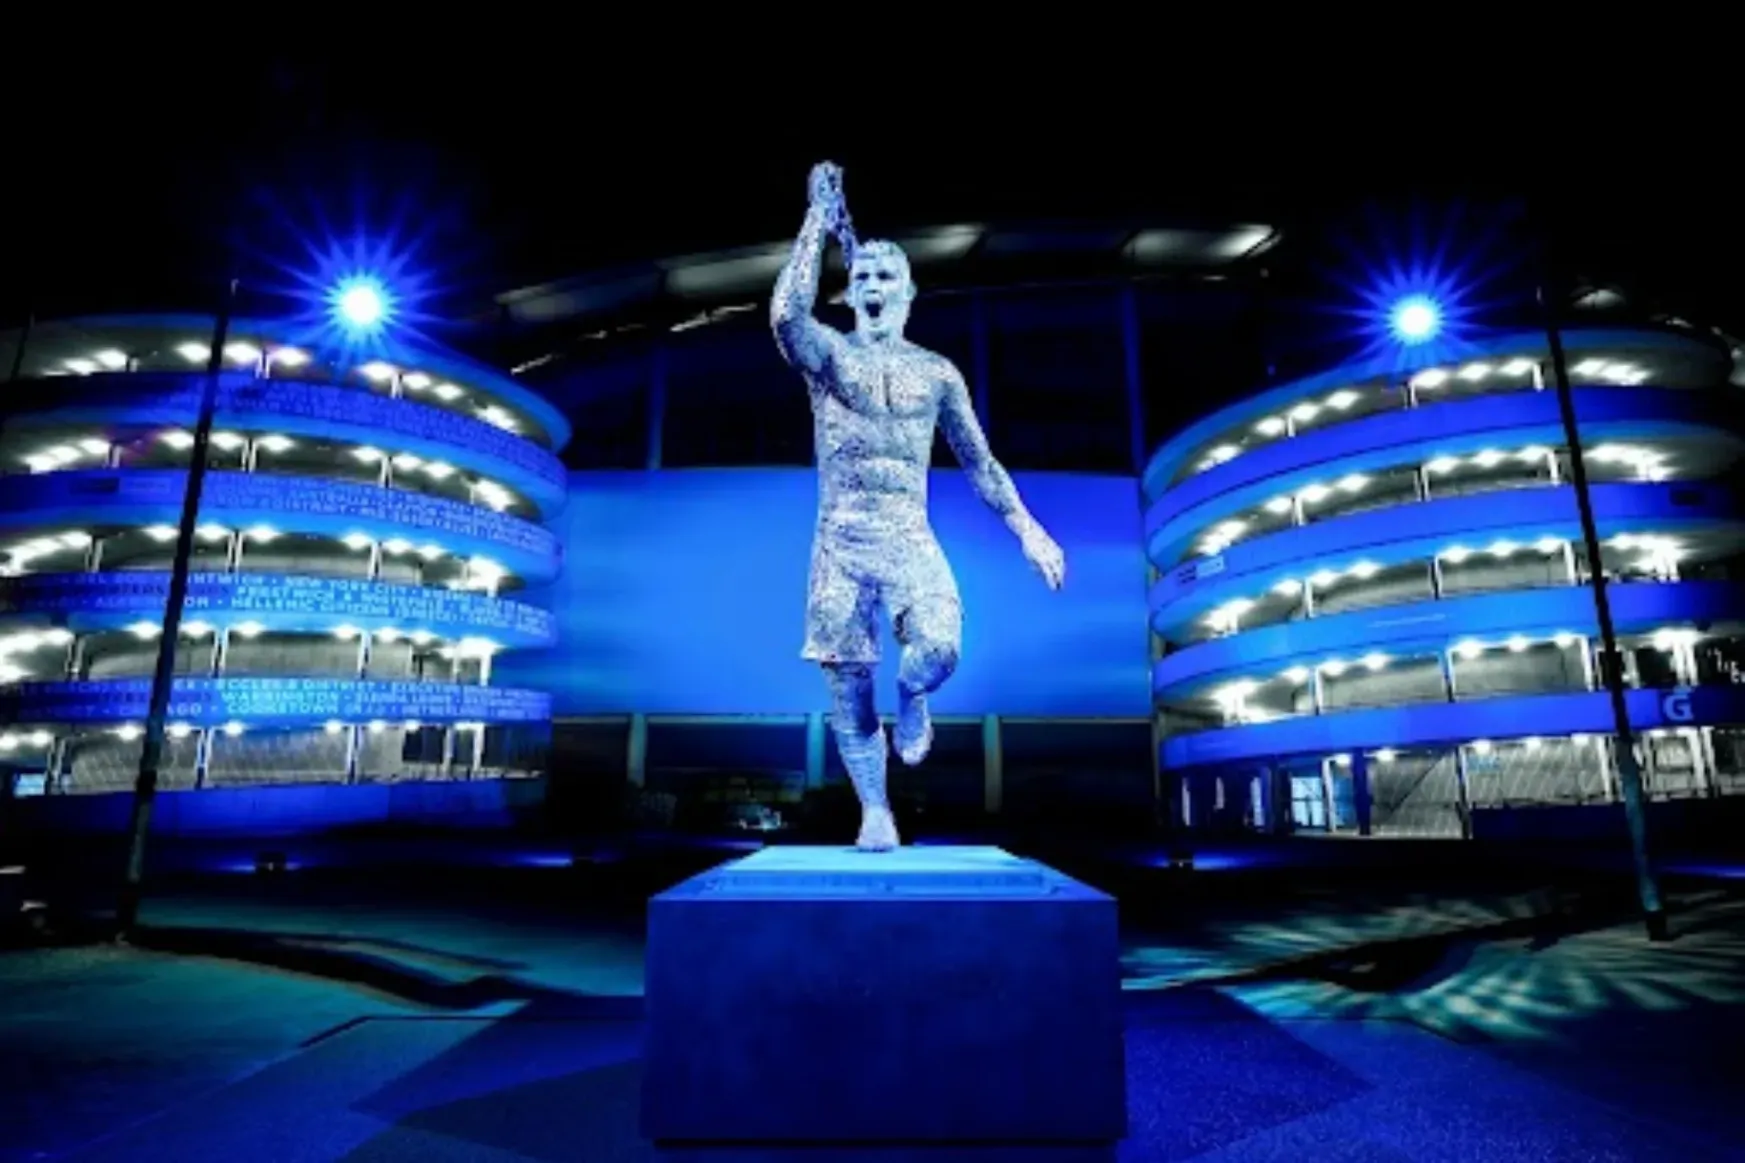 Szobrot kapott Agüero a Manchester Citytől, kis képzelőerővel felismerhető az arca